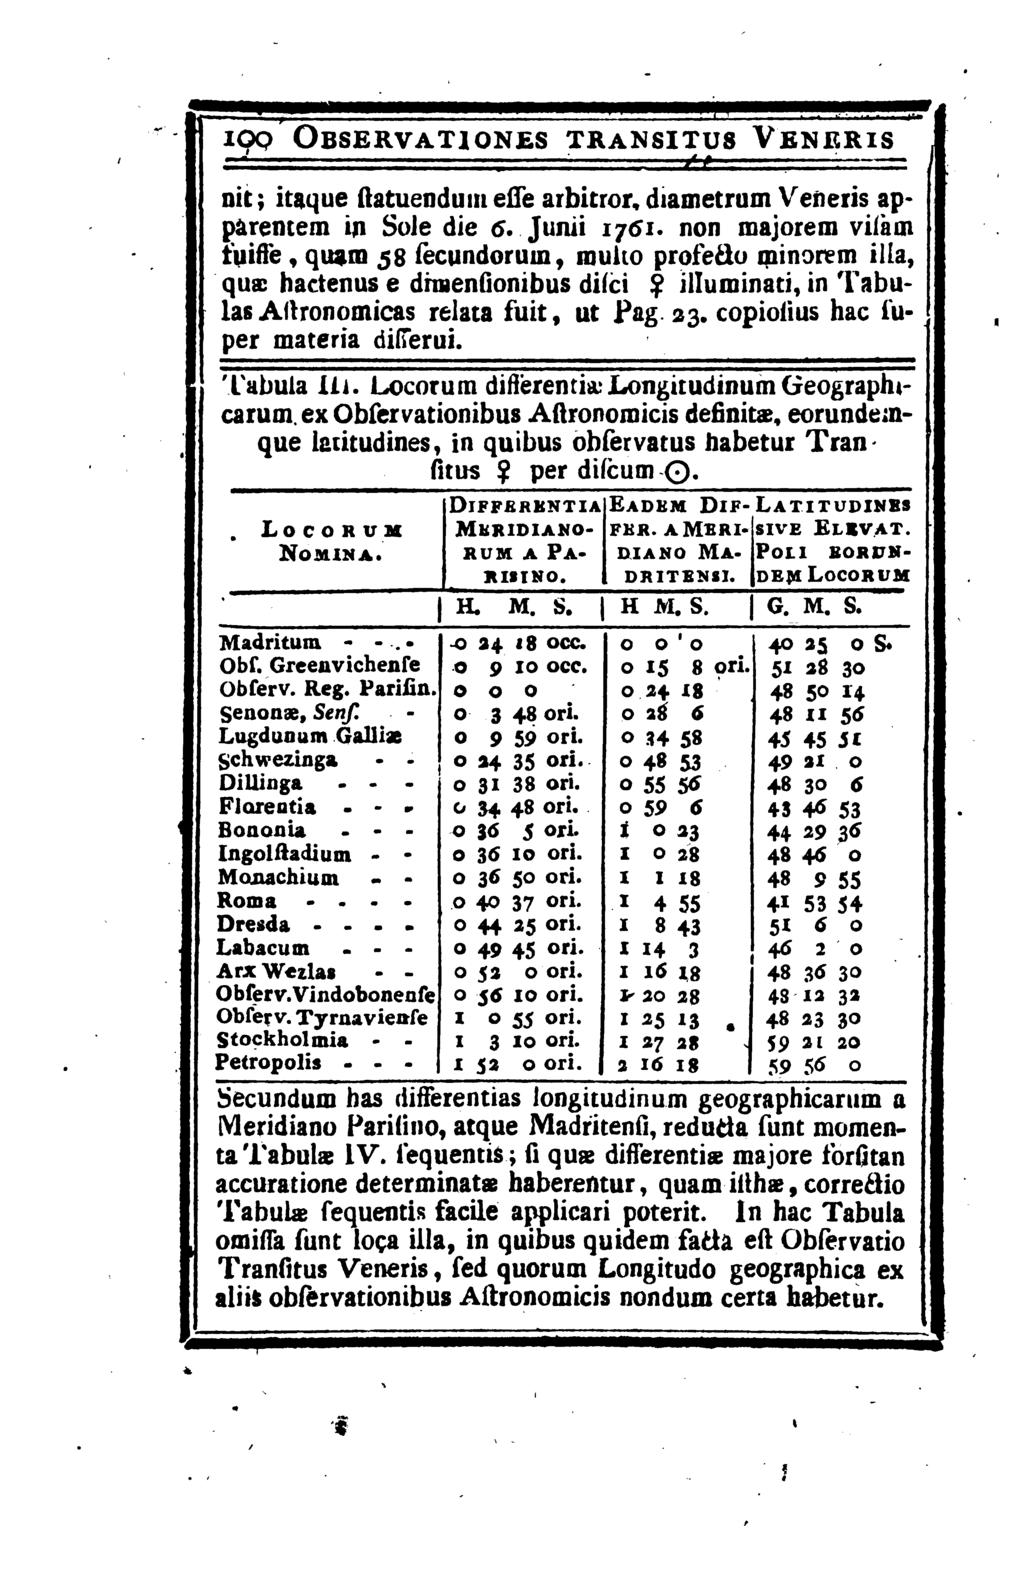 ioq Observauones trans1tus Veneris nit; itaque flatuenduni esse arbitror, diametrum Veneris apparentem in Sole die 6. Junii 1751.